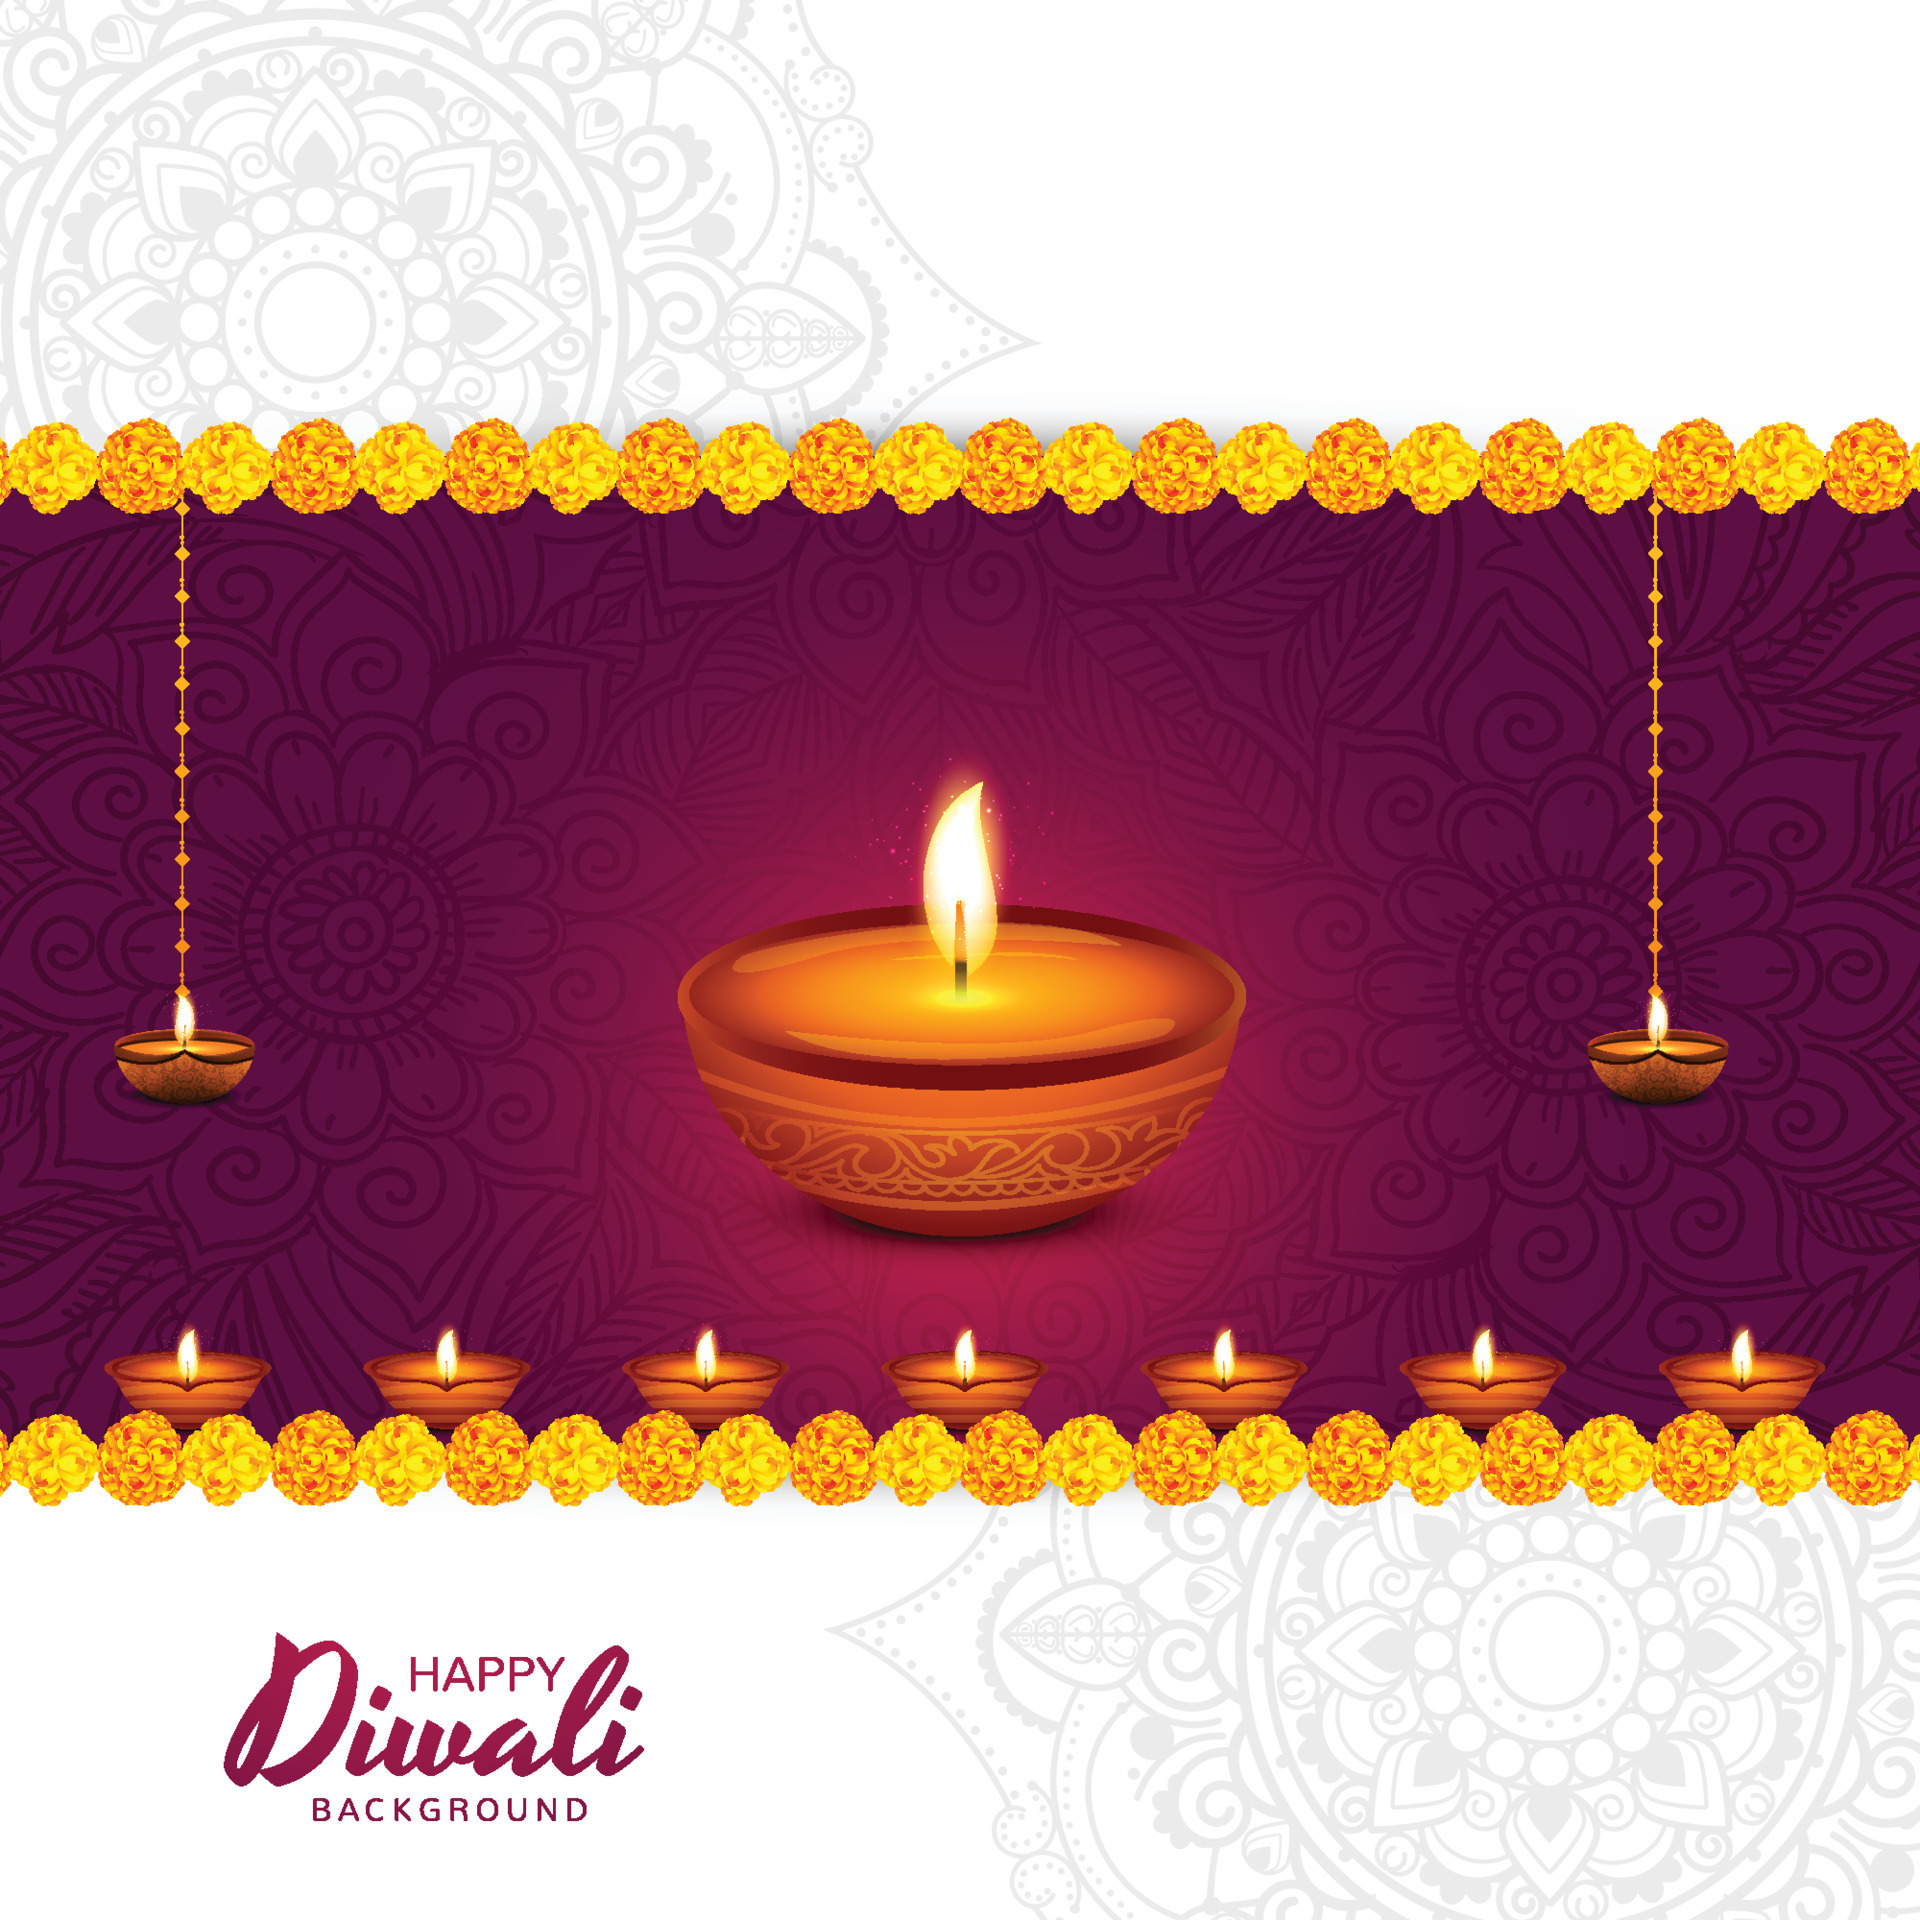 Nền tảng lễ hội Diwali: Lễ hội Diwali không chỉ là một ngày lễ mà còn là nền tảng để khuyến khích tình yêu thương và đoàn kết. Hãy khám phá sự đa dạng văn hóa và giá trị tinh thần trong lễ hội Diwali qua những hình ảnh mới nhất.